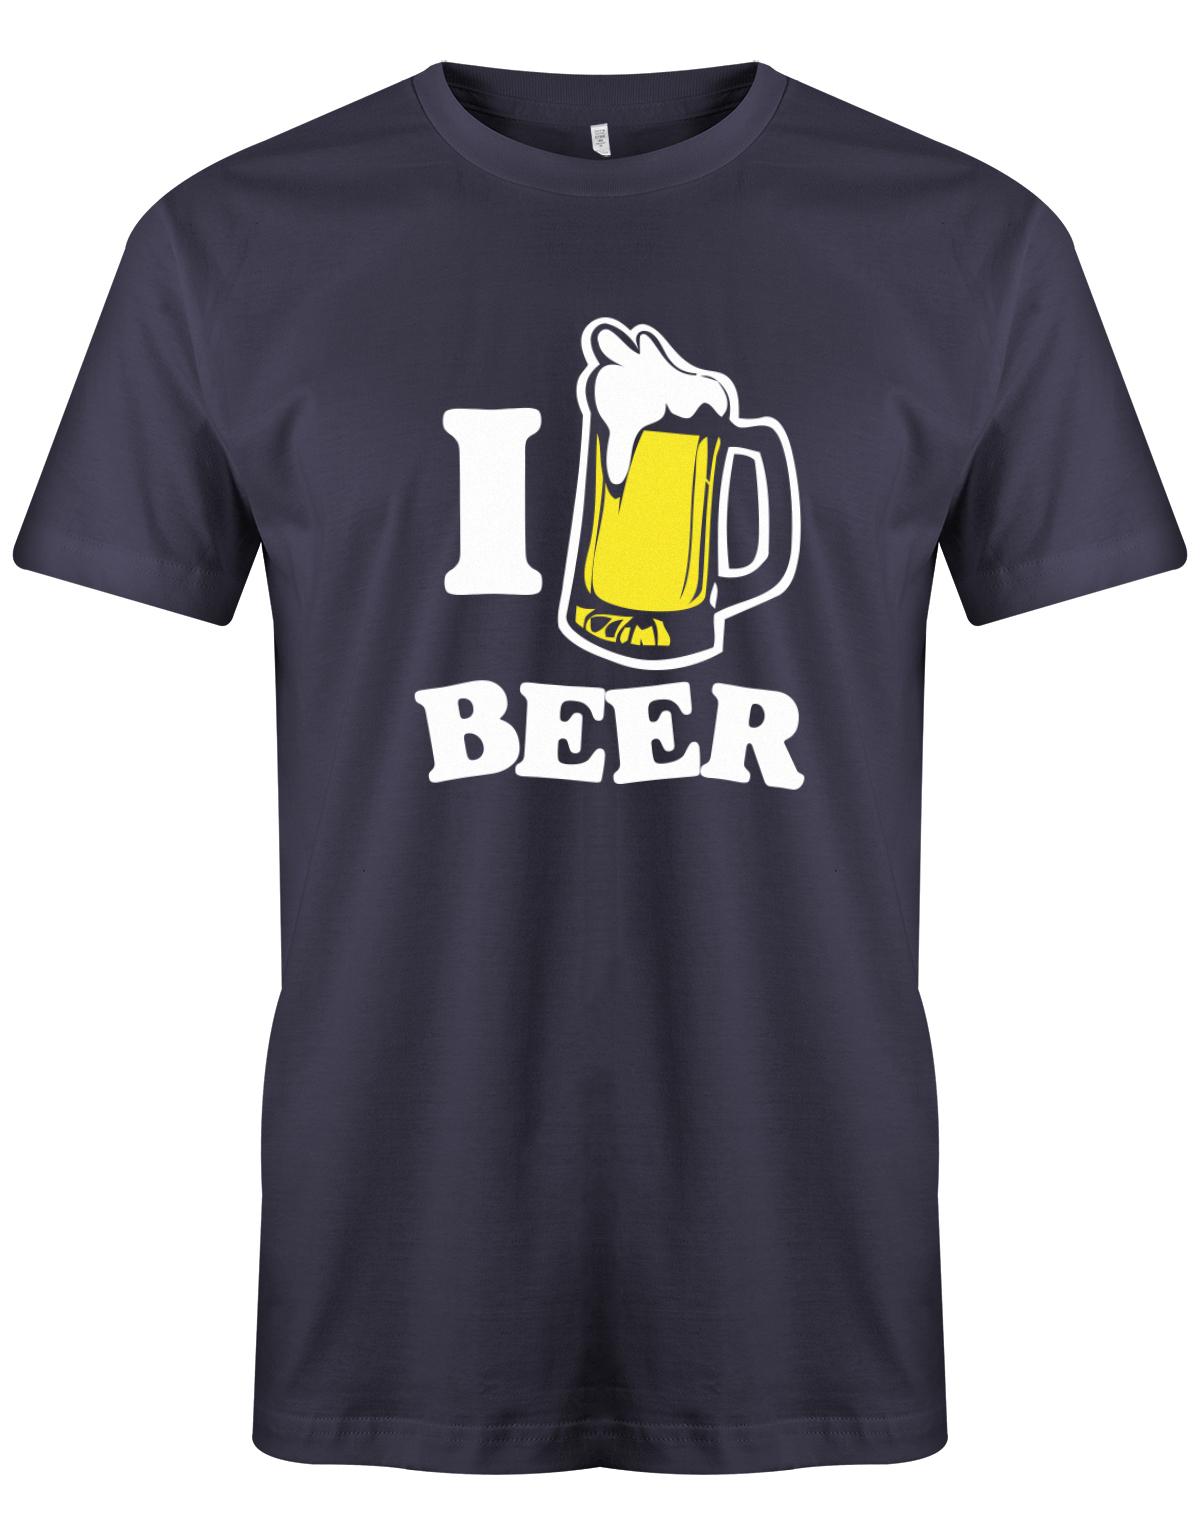 I-love-Beer-herren-bier-Shirt-Navy